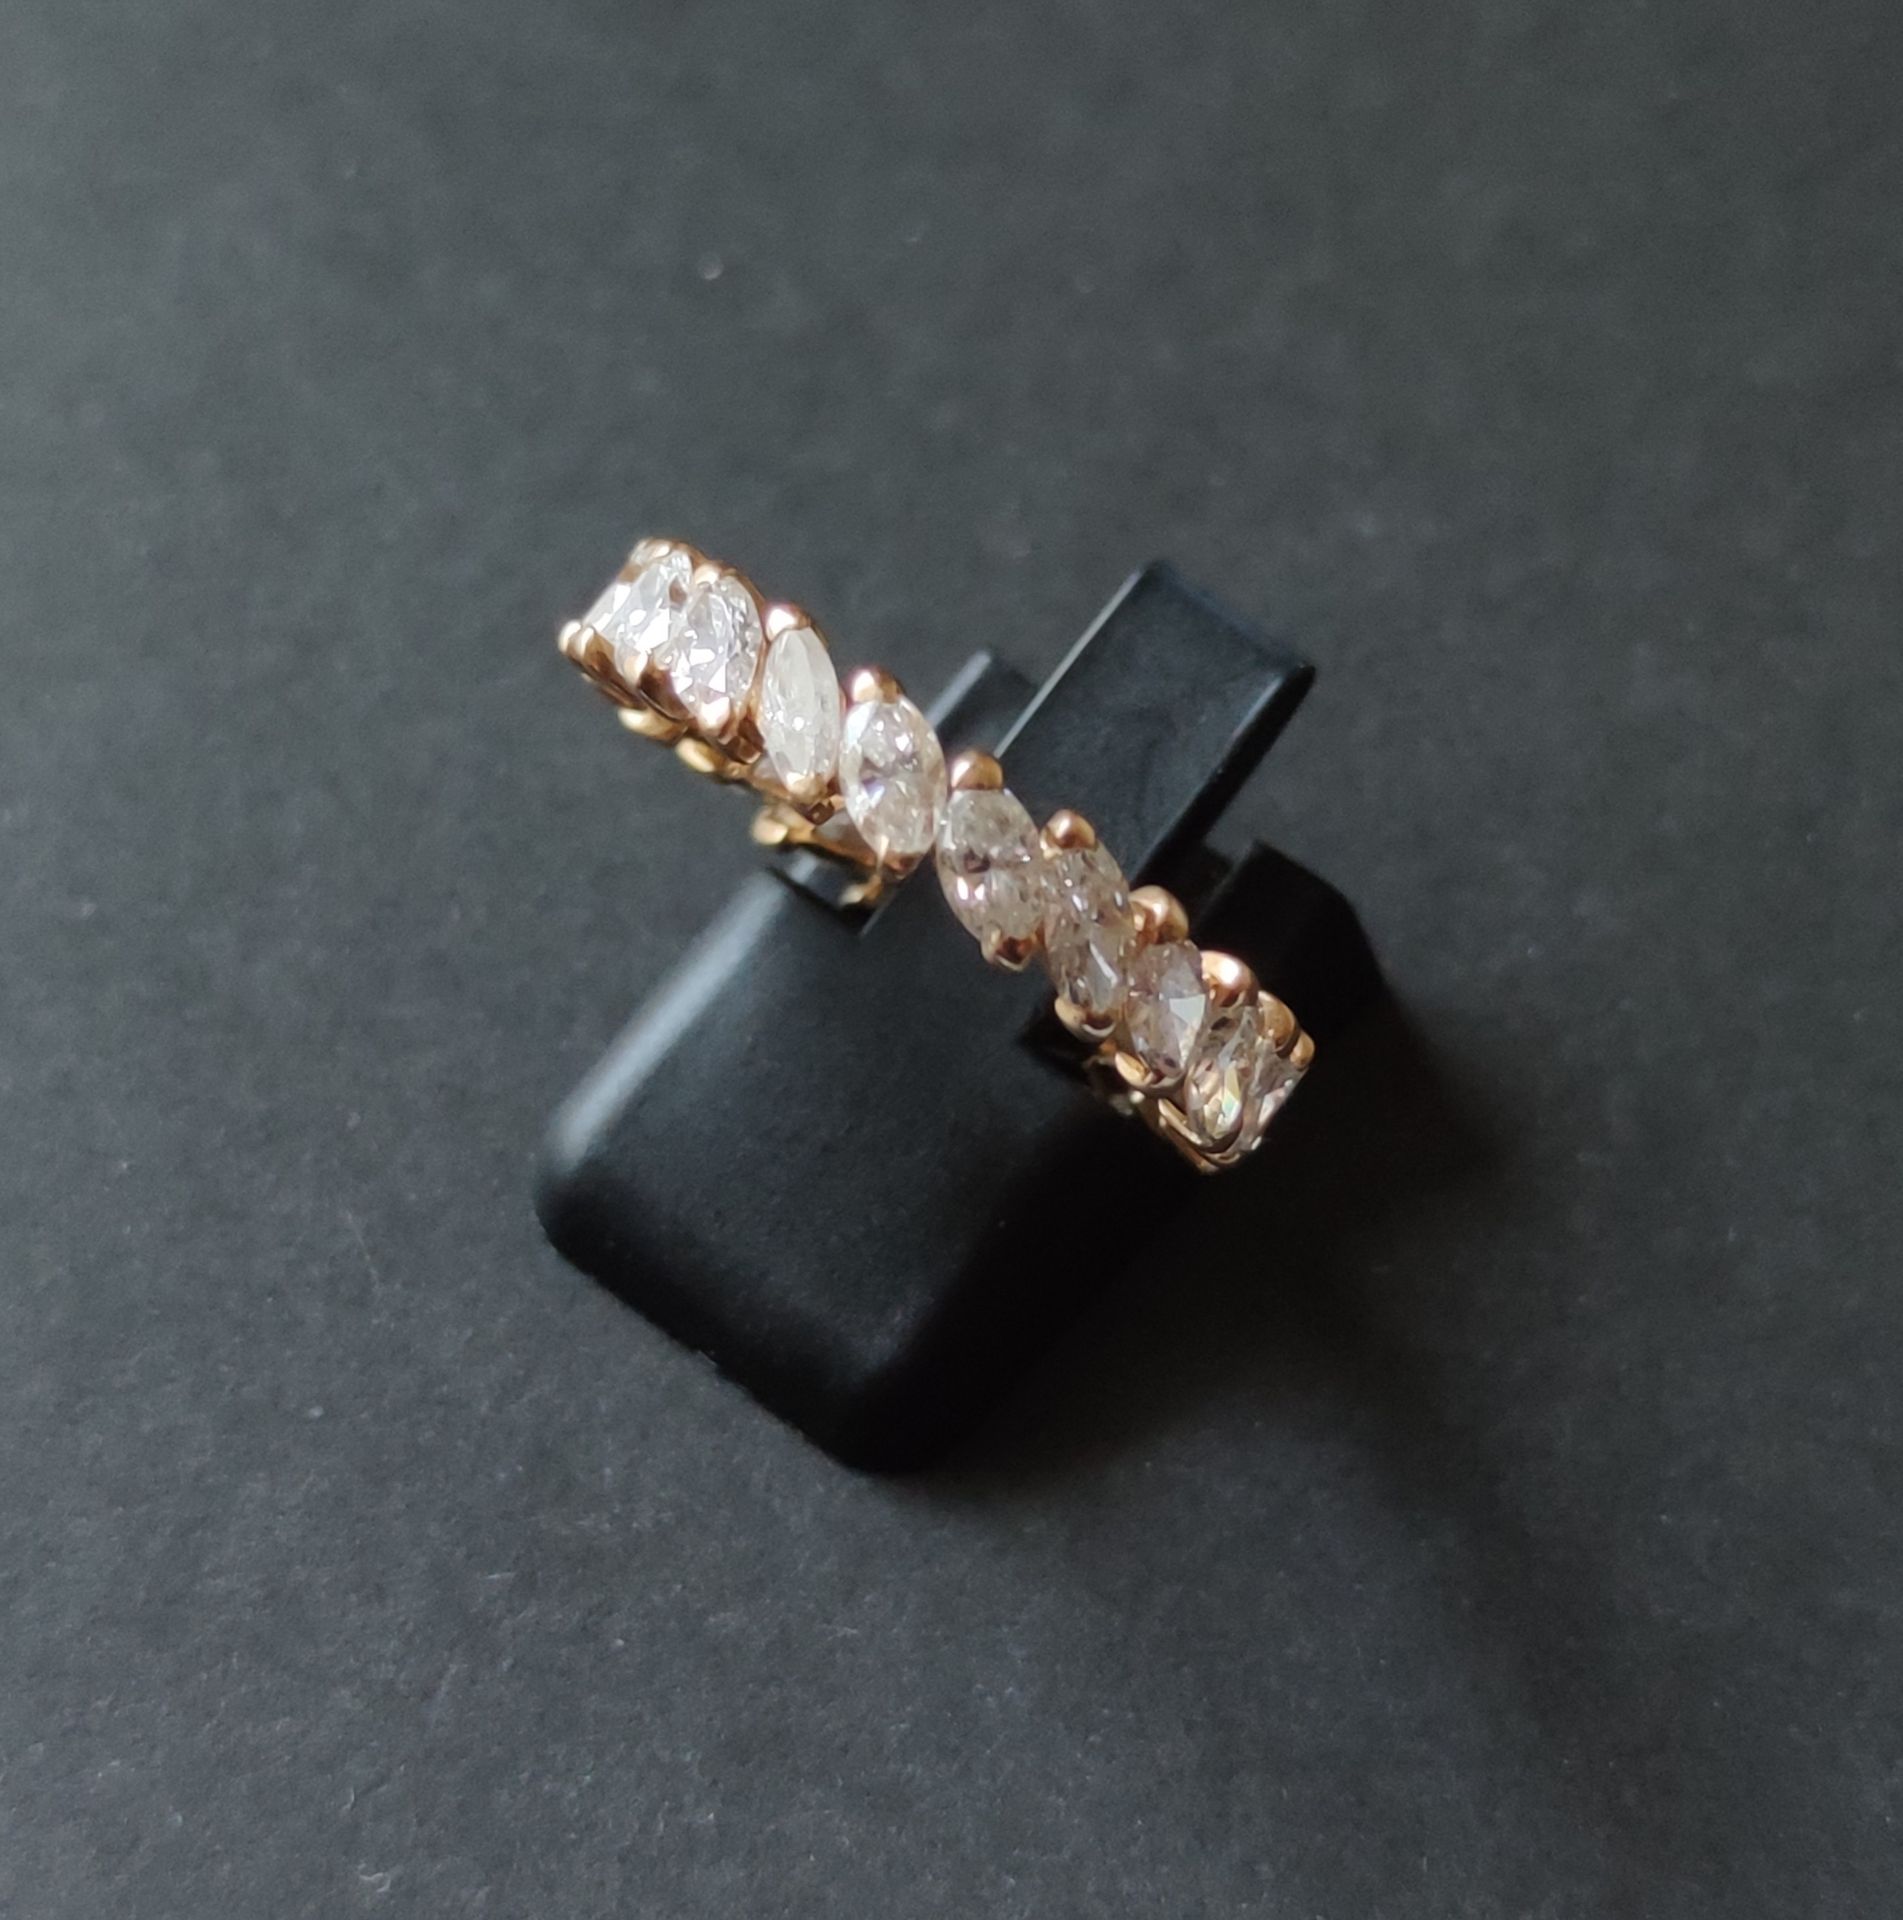 Null 
ALLIANCE，镶嵌脐带钻石（21颗），含钻石 毛重：3.5克 手指尺寸：59毫米